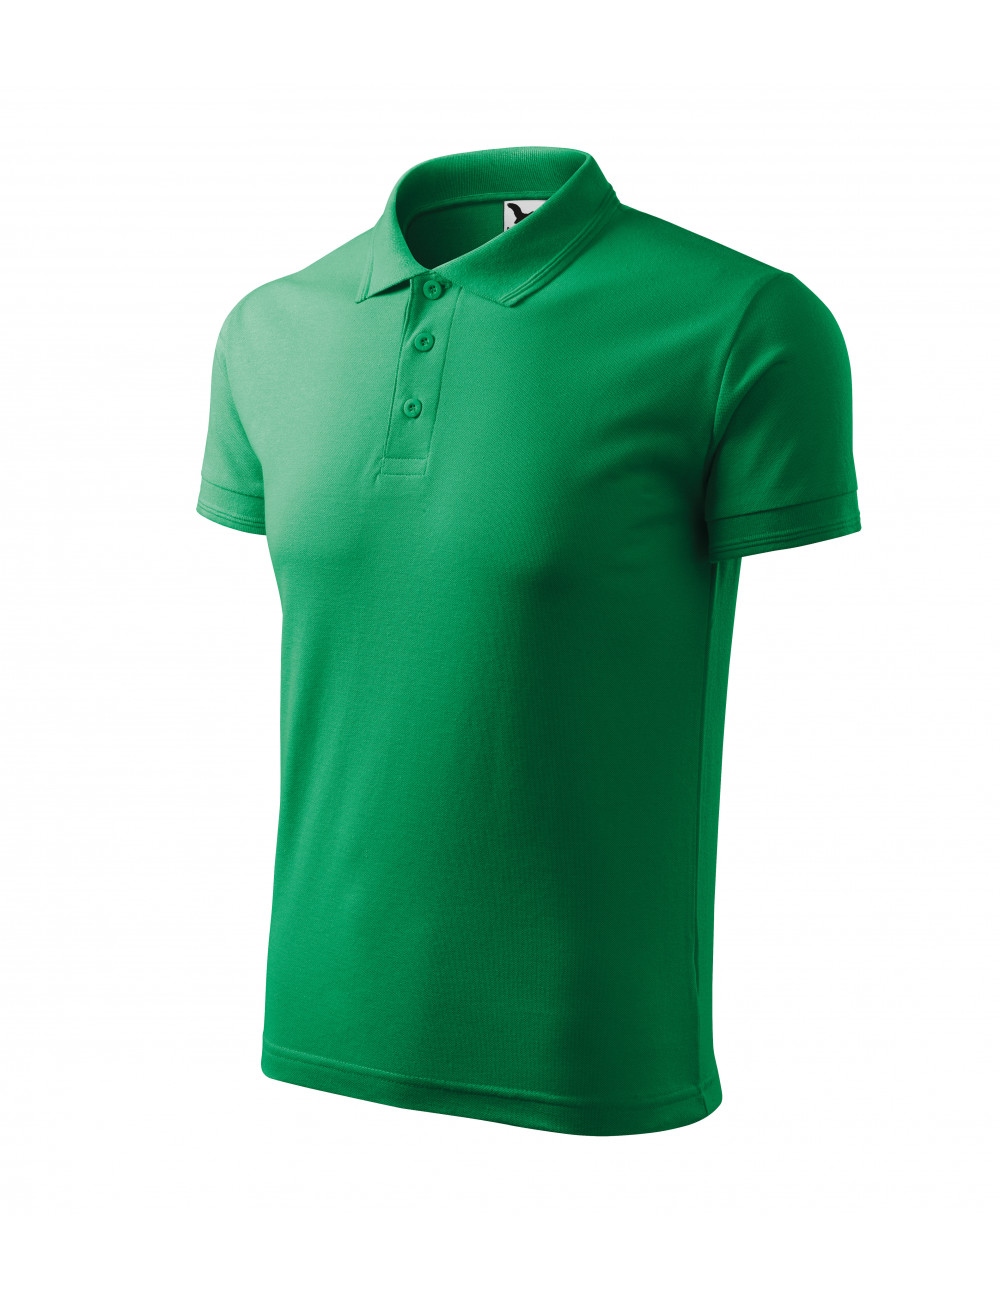 Men`s polo shirt pique polo 203 grass green Adler Malfini